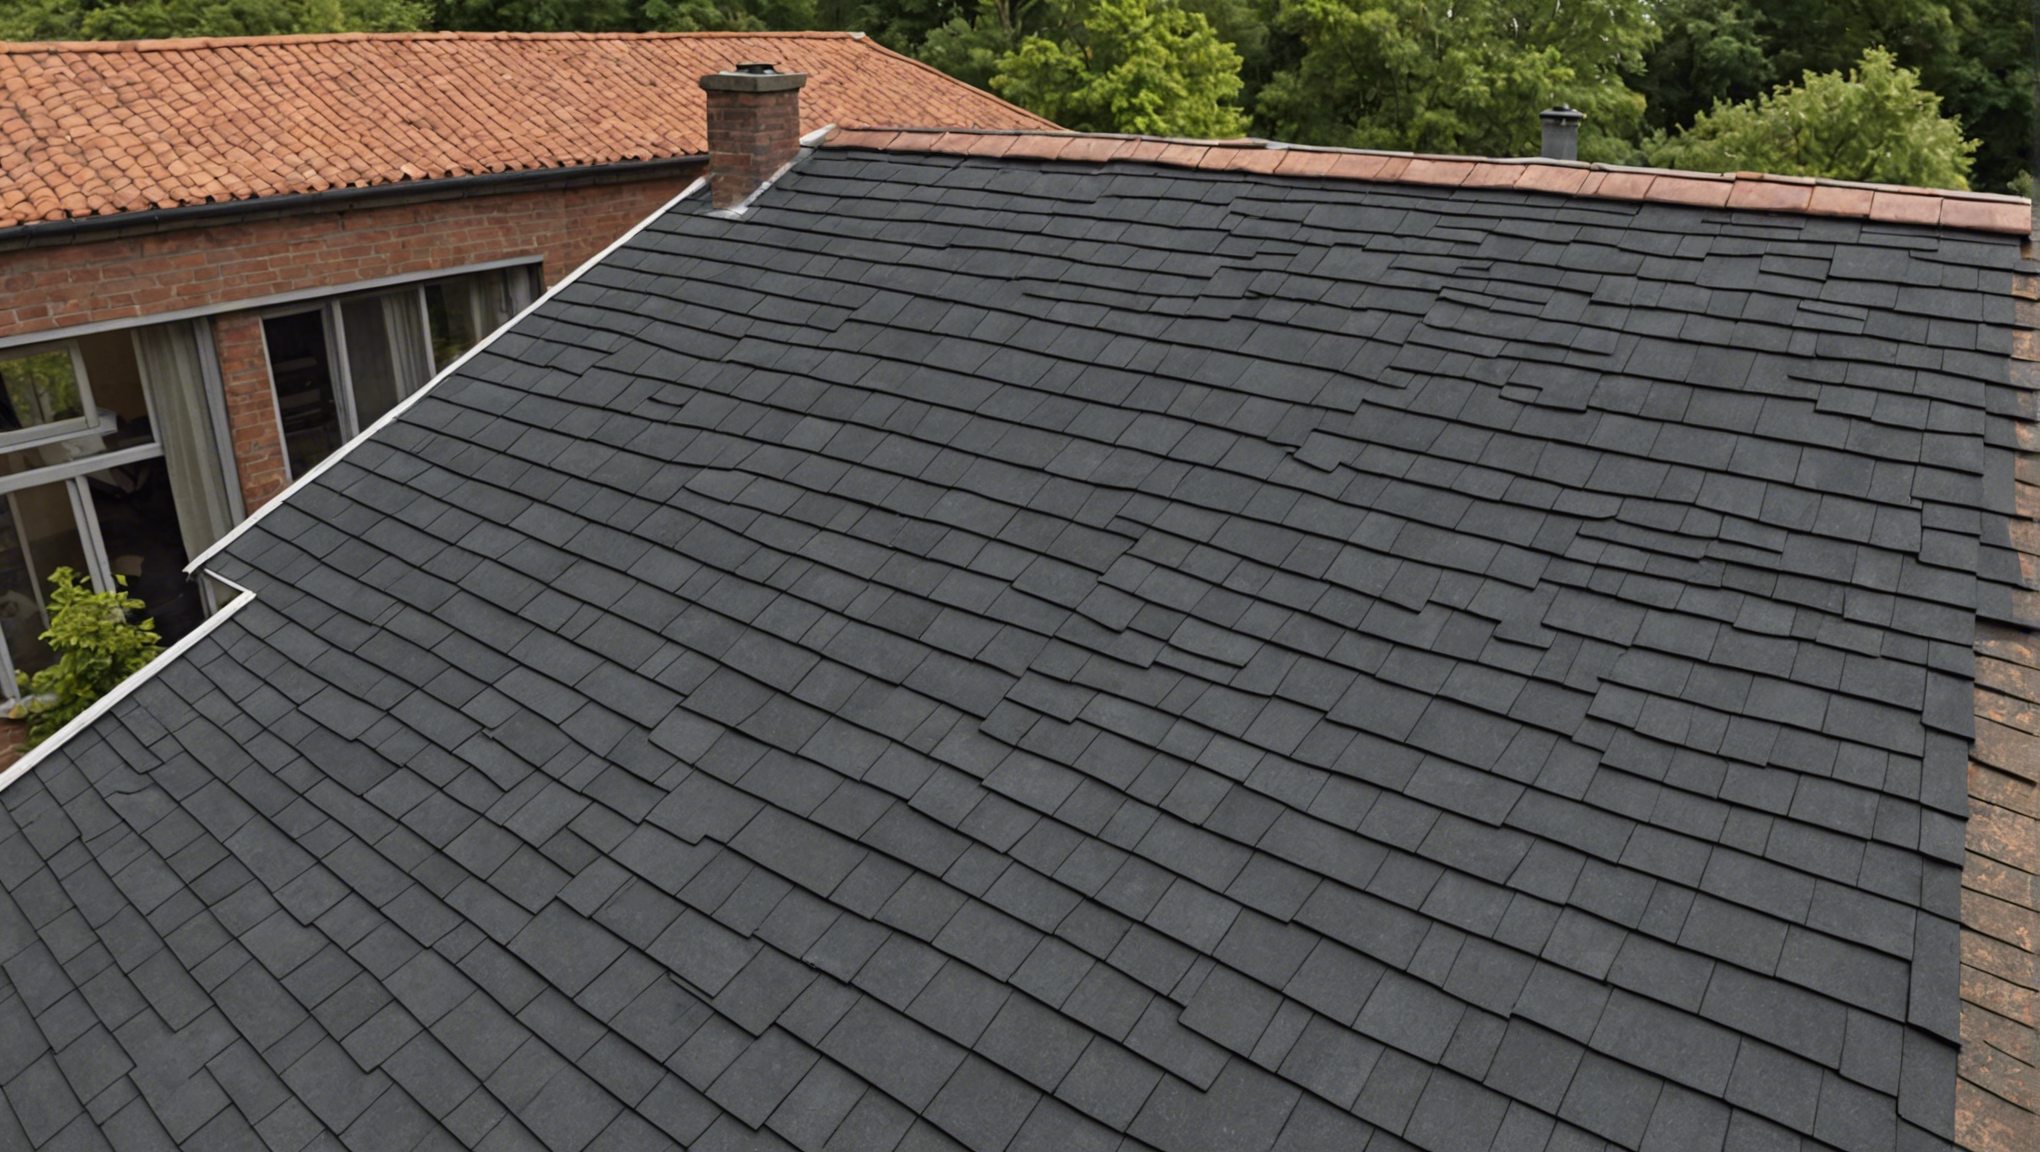 découvrez si votre toiture a besoin d'une rénovation avec nos conseils et services professionnels.